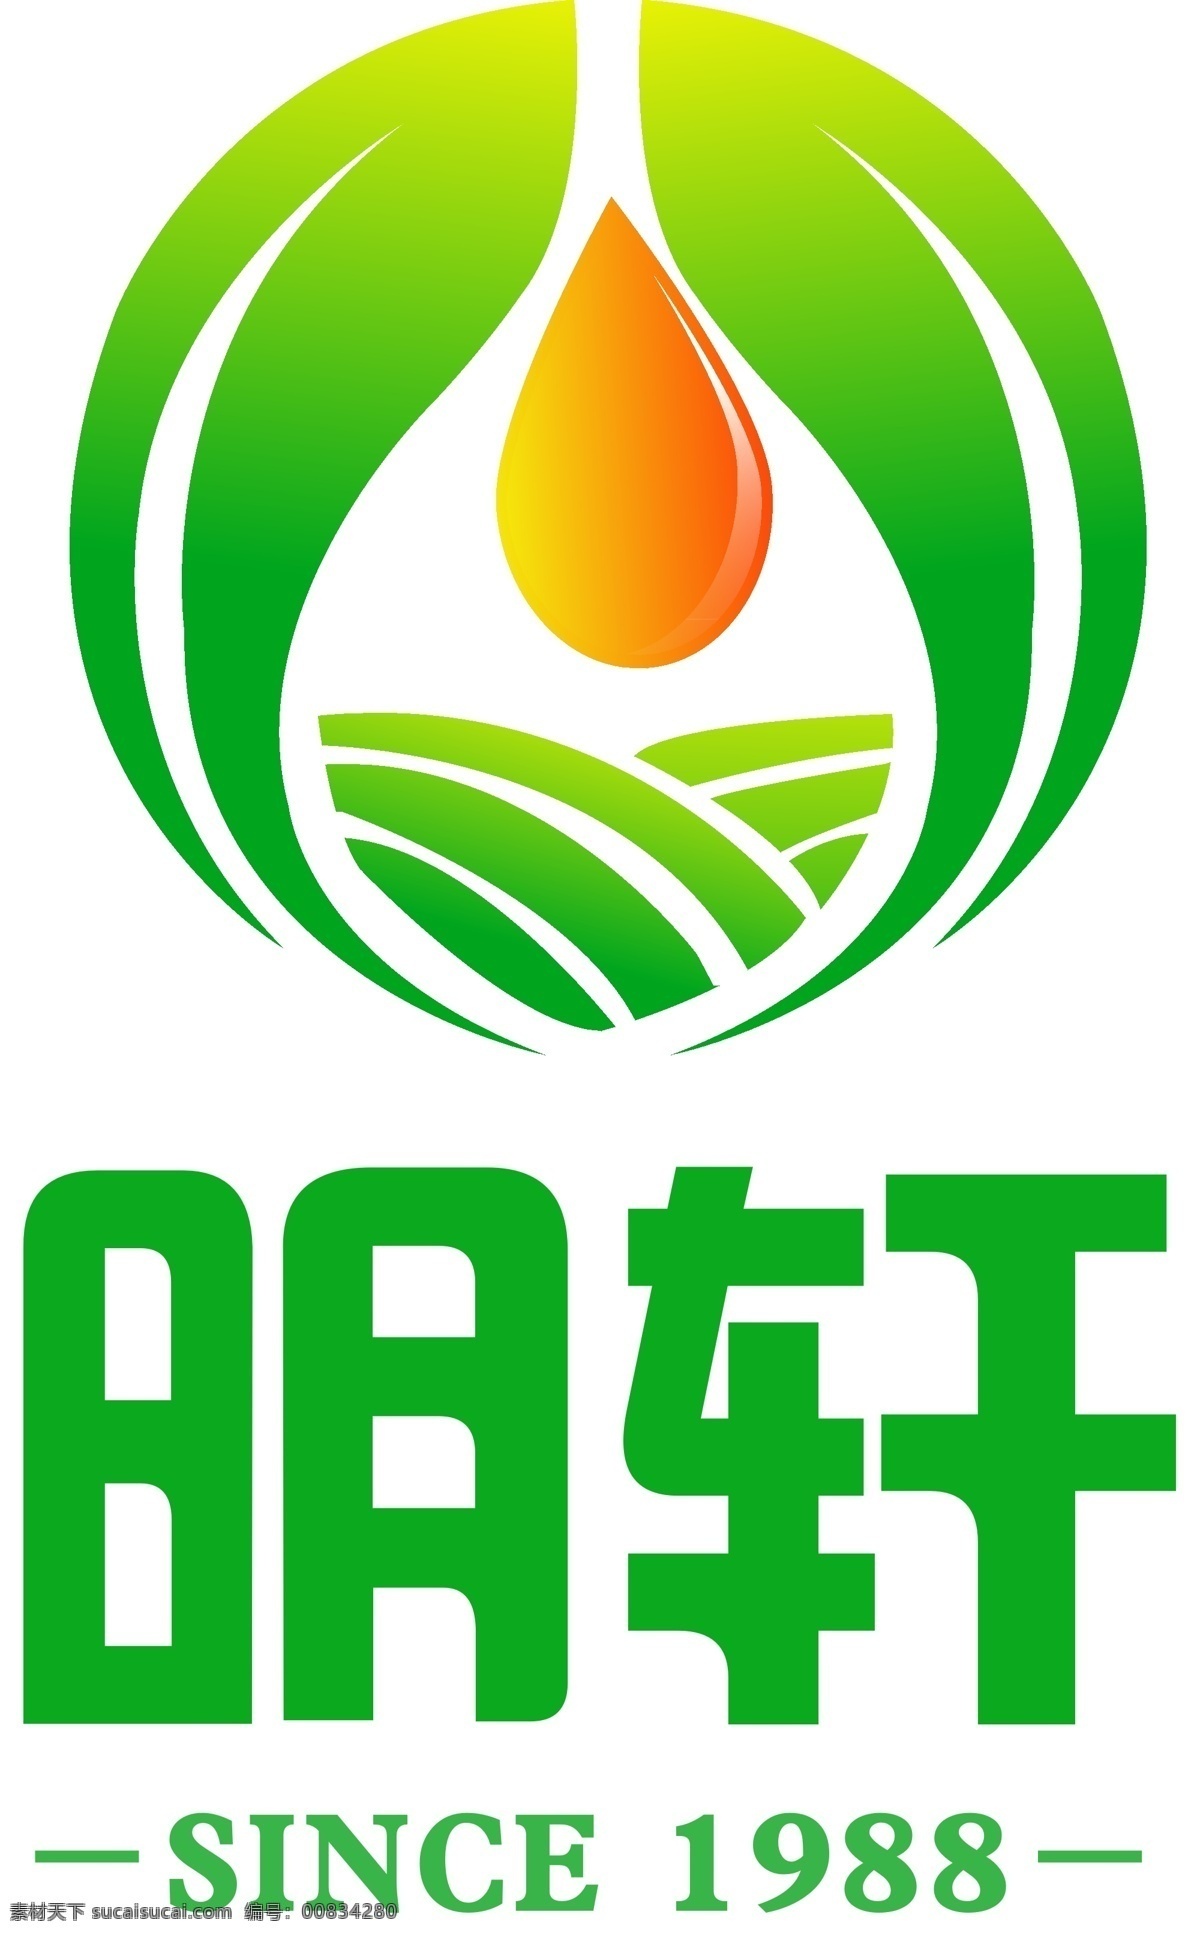 香油 油 商标 logo图片 logo 叶子 标志图标 企业 标志